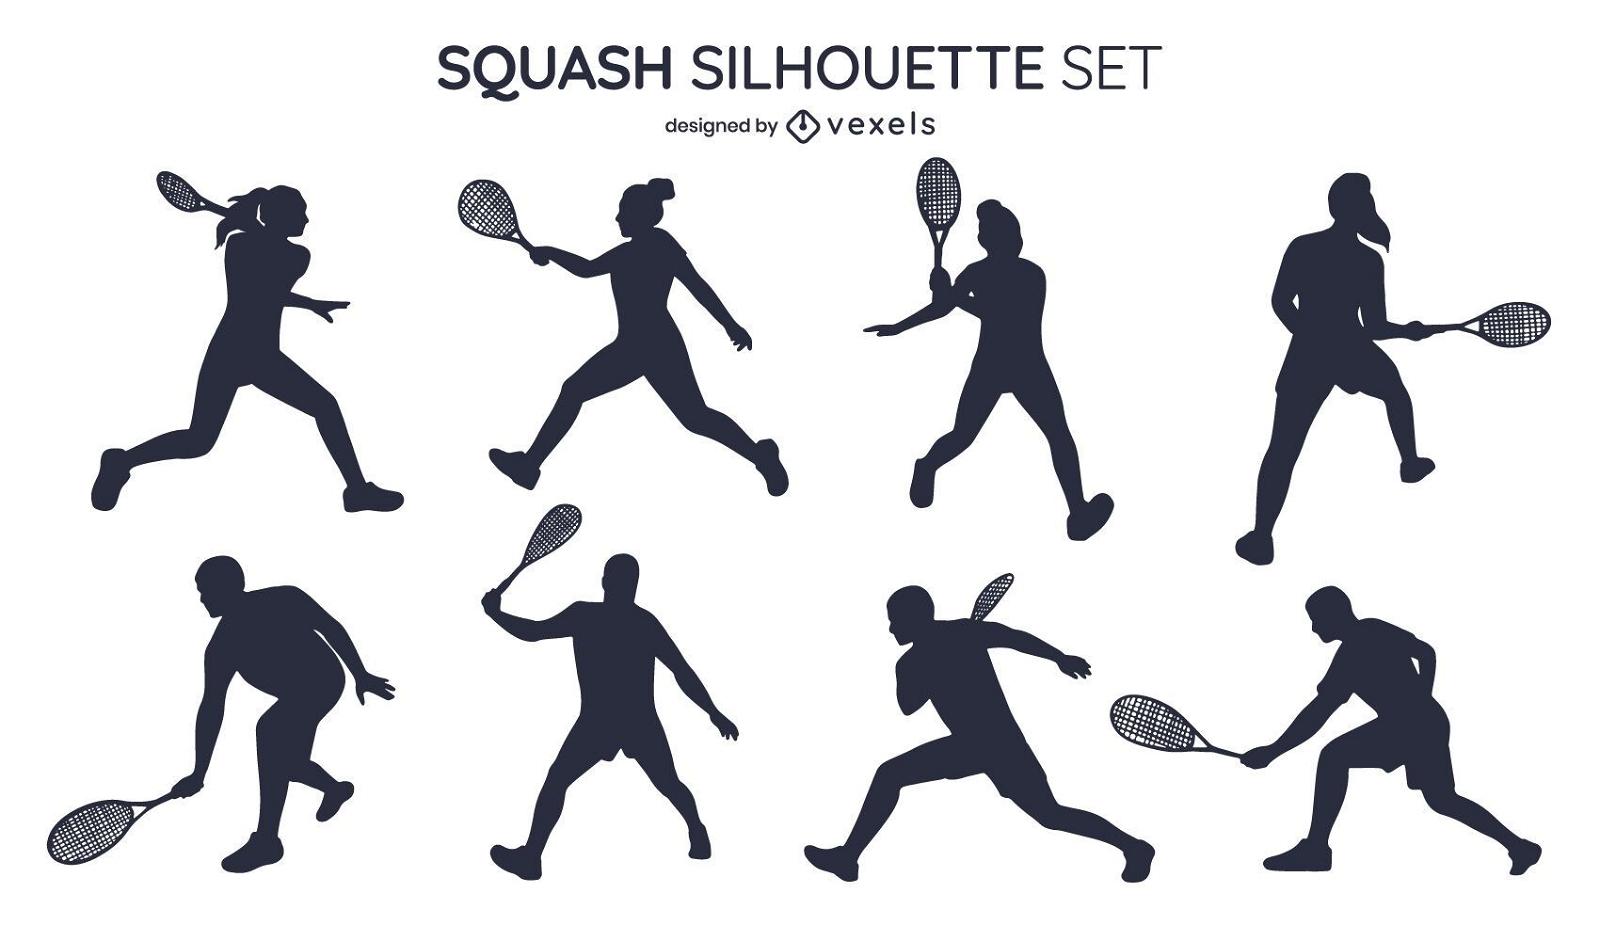 Squash silhouette set